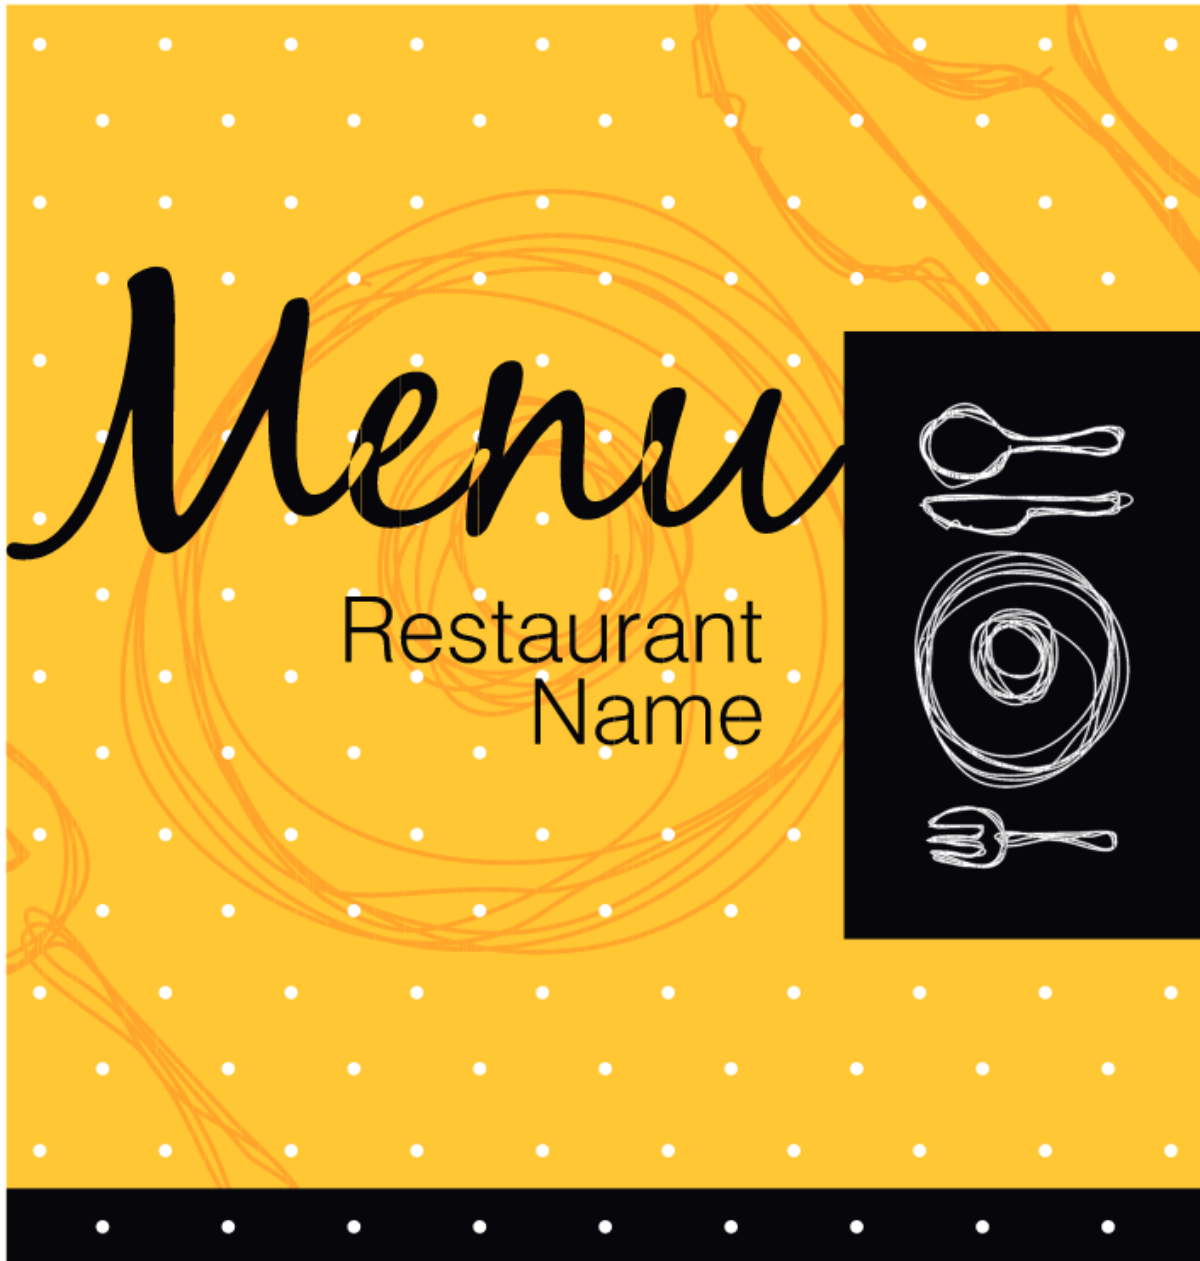 Thiết kế menu nhà hàng hiện đại nổi bật: Hãy để sự sáng tạo lan tỏa vào thiết kế menu nhà hàng của bạn! Với sự kết hợp màu sắc, hình ảnh và phông chữ, bạn có thể tạo ra một thiết kế menu độc đáo, hiện đại và nổi bật. Điều đó chắc chắn sẽ góp phần tạo ra sự độc nhất và thu hút khách hàng đến với nhà hàng của bạn.